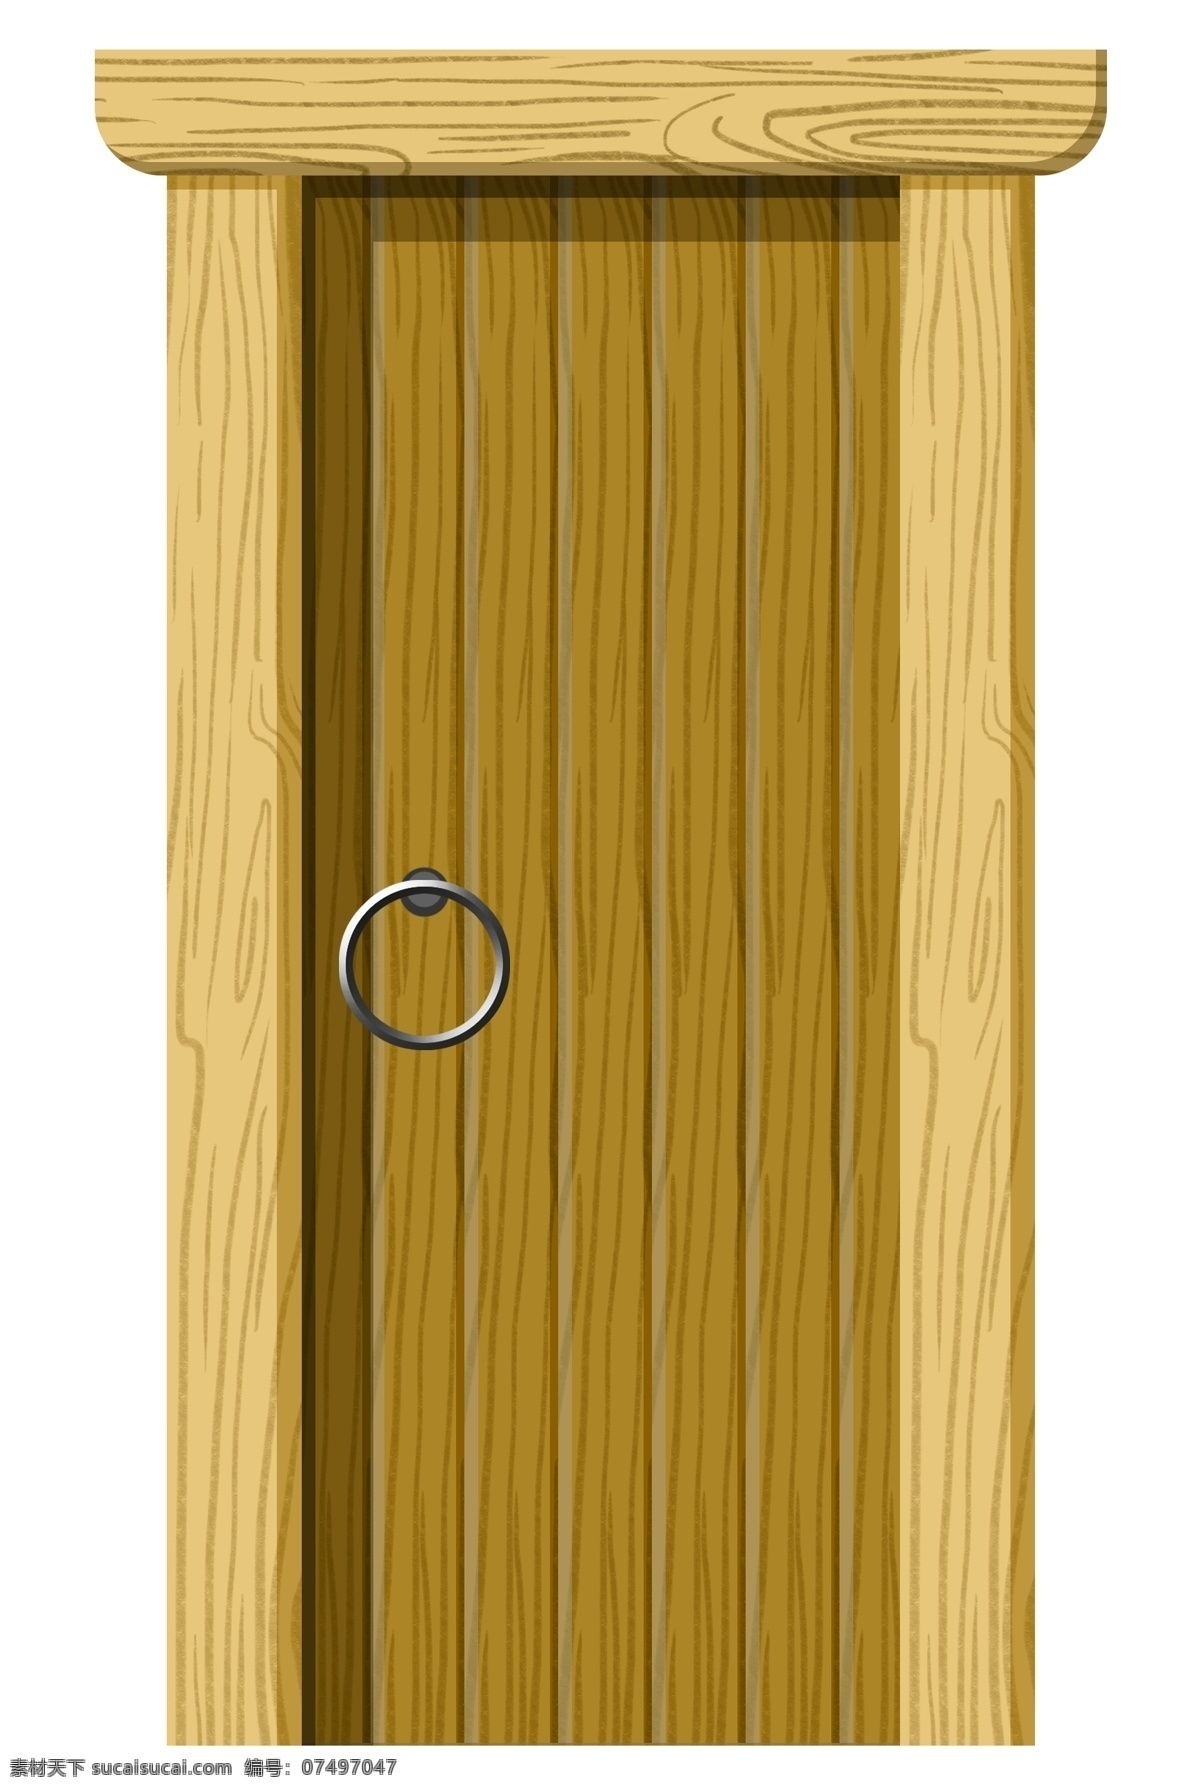 木质 黄色 门框 插画 木质的大门 卡通插画 木质插画 木纹插画 实木产品 实木物品 实木的大门